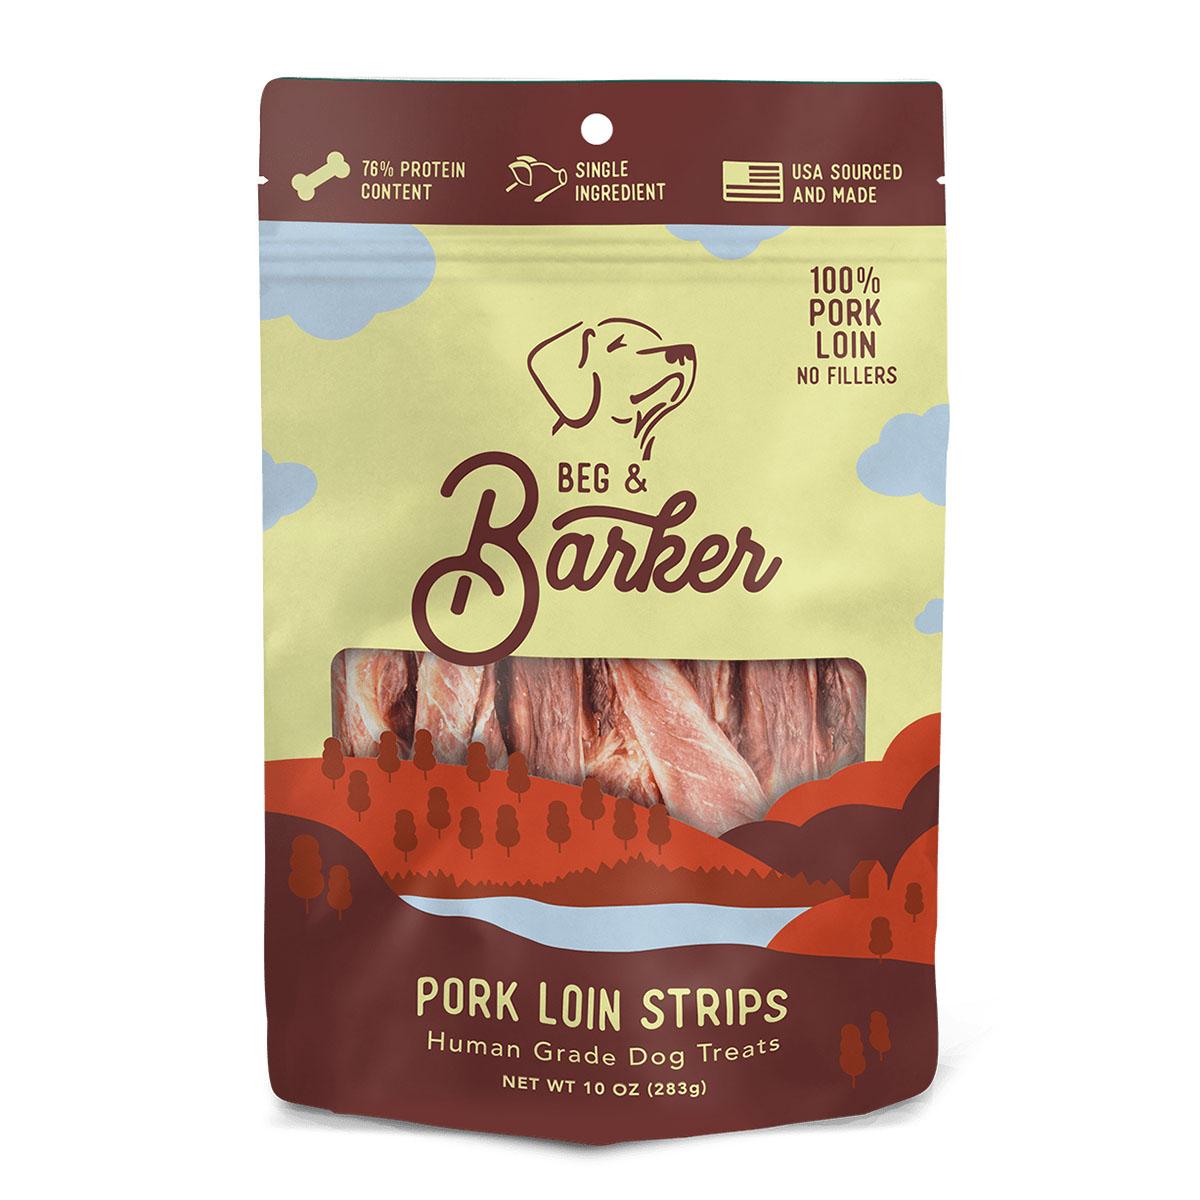 Beg & Barker Pork Loin Strips Dog Treats